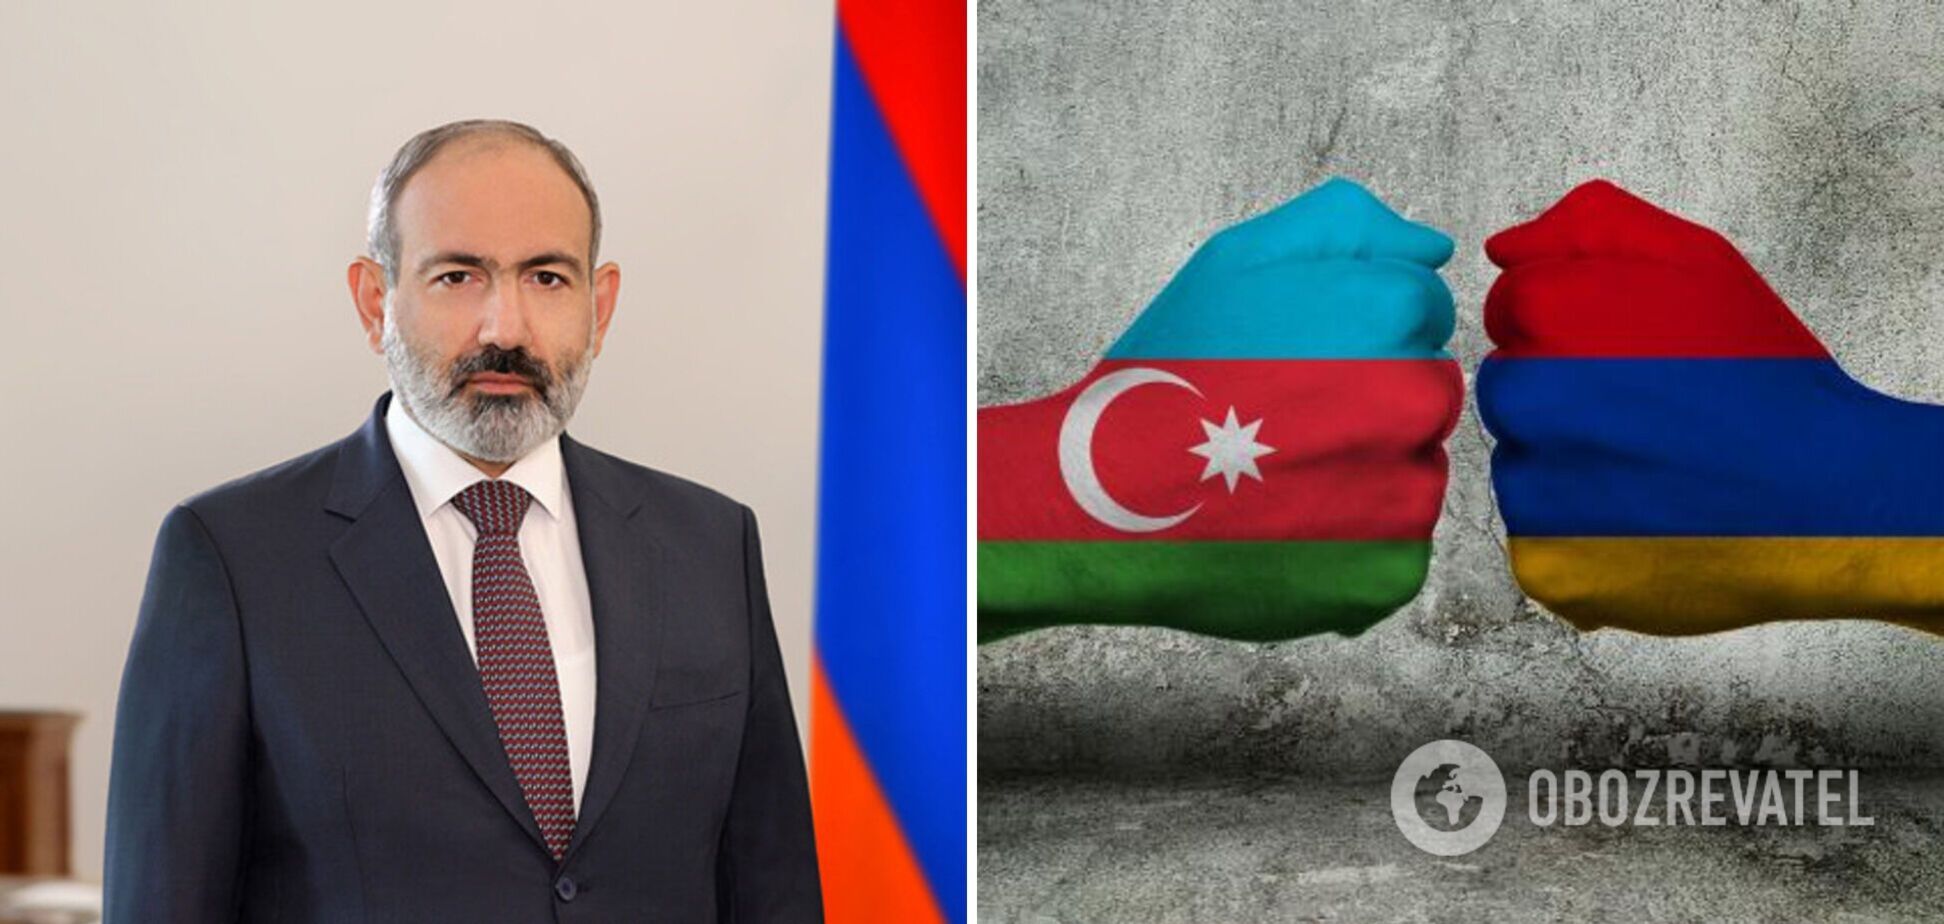 Вірменія готова визнати територіальну цілісність Азербайджану і підписати угоду про мир, – Пашинян